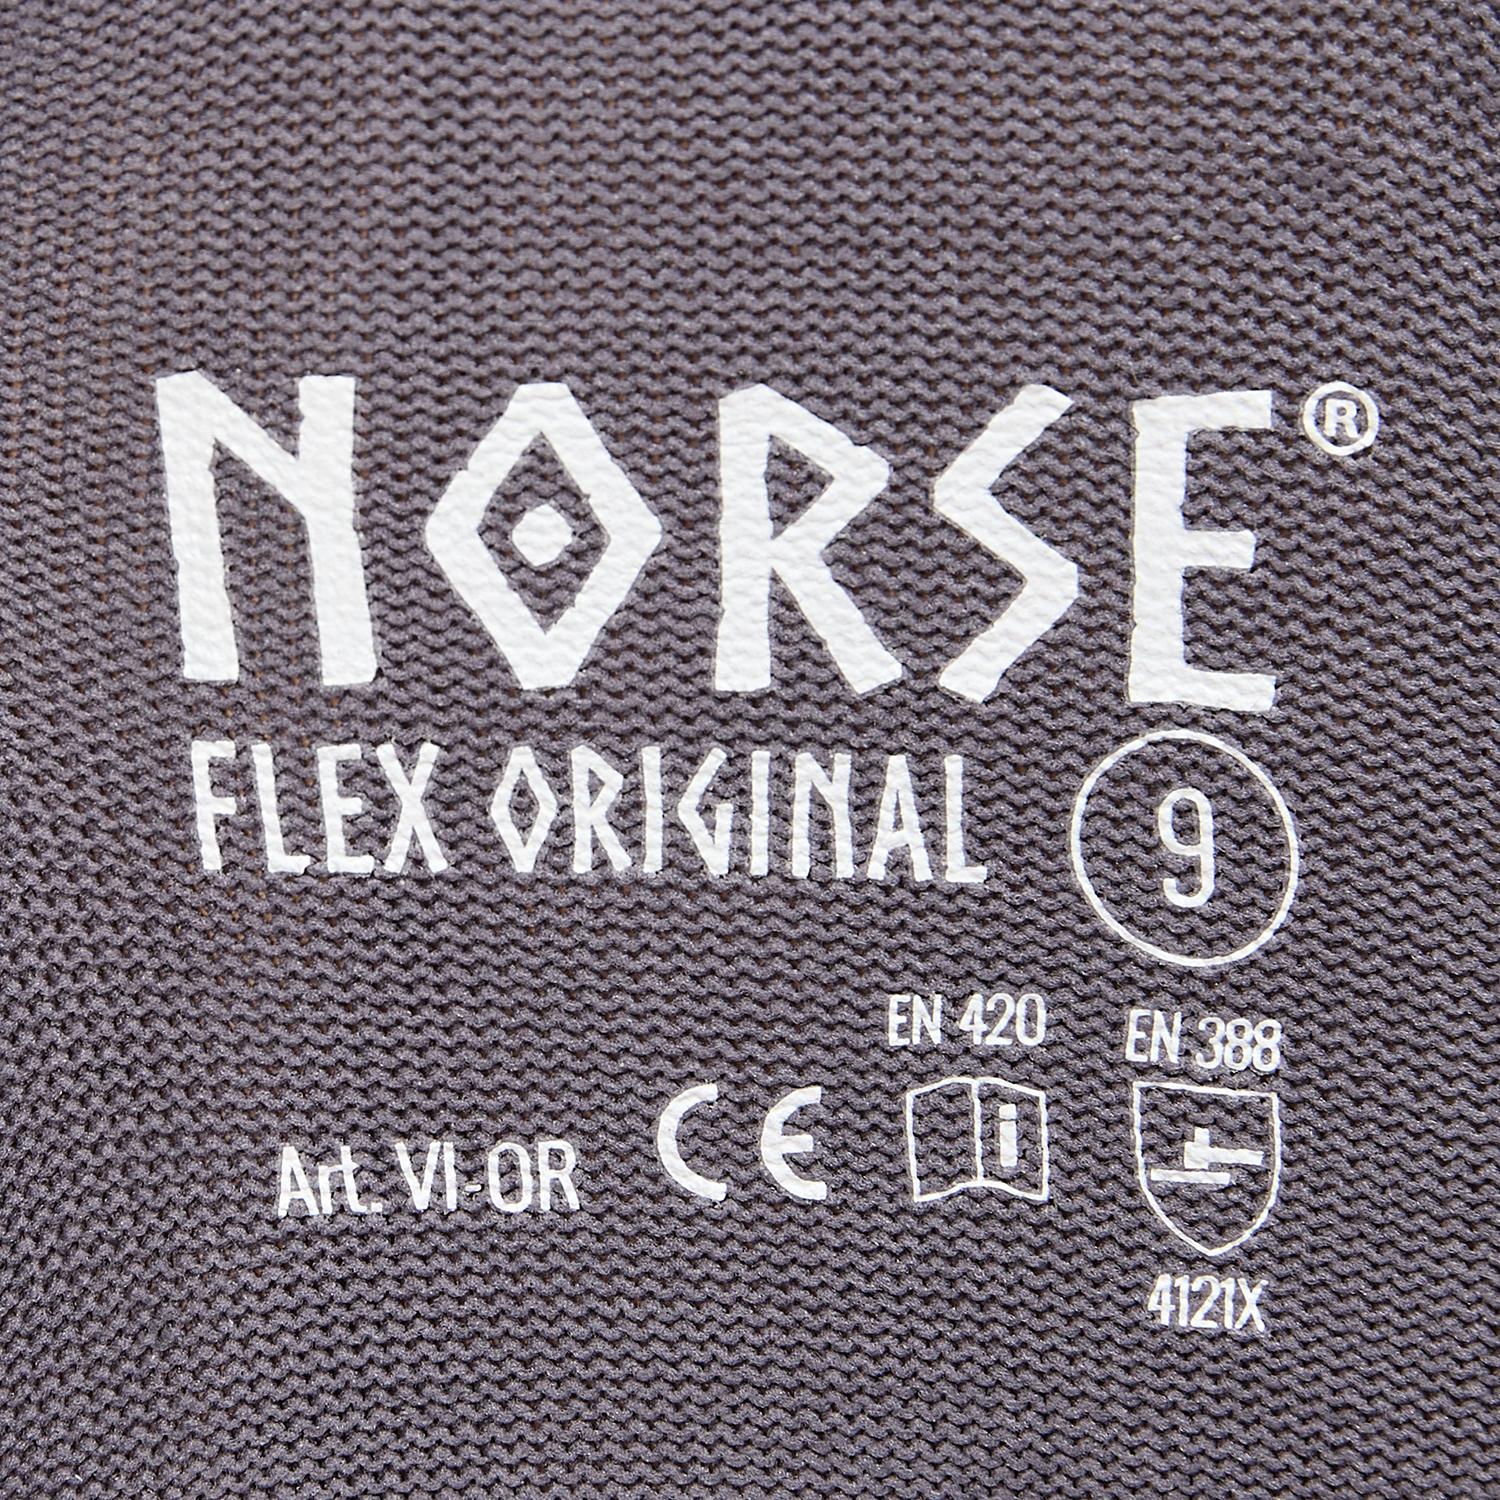 NORSE Flex Original Montagehandschuhe Größe 9